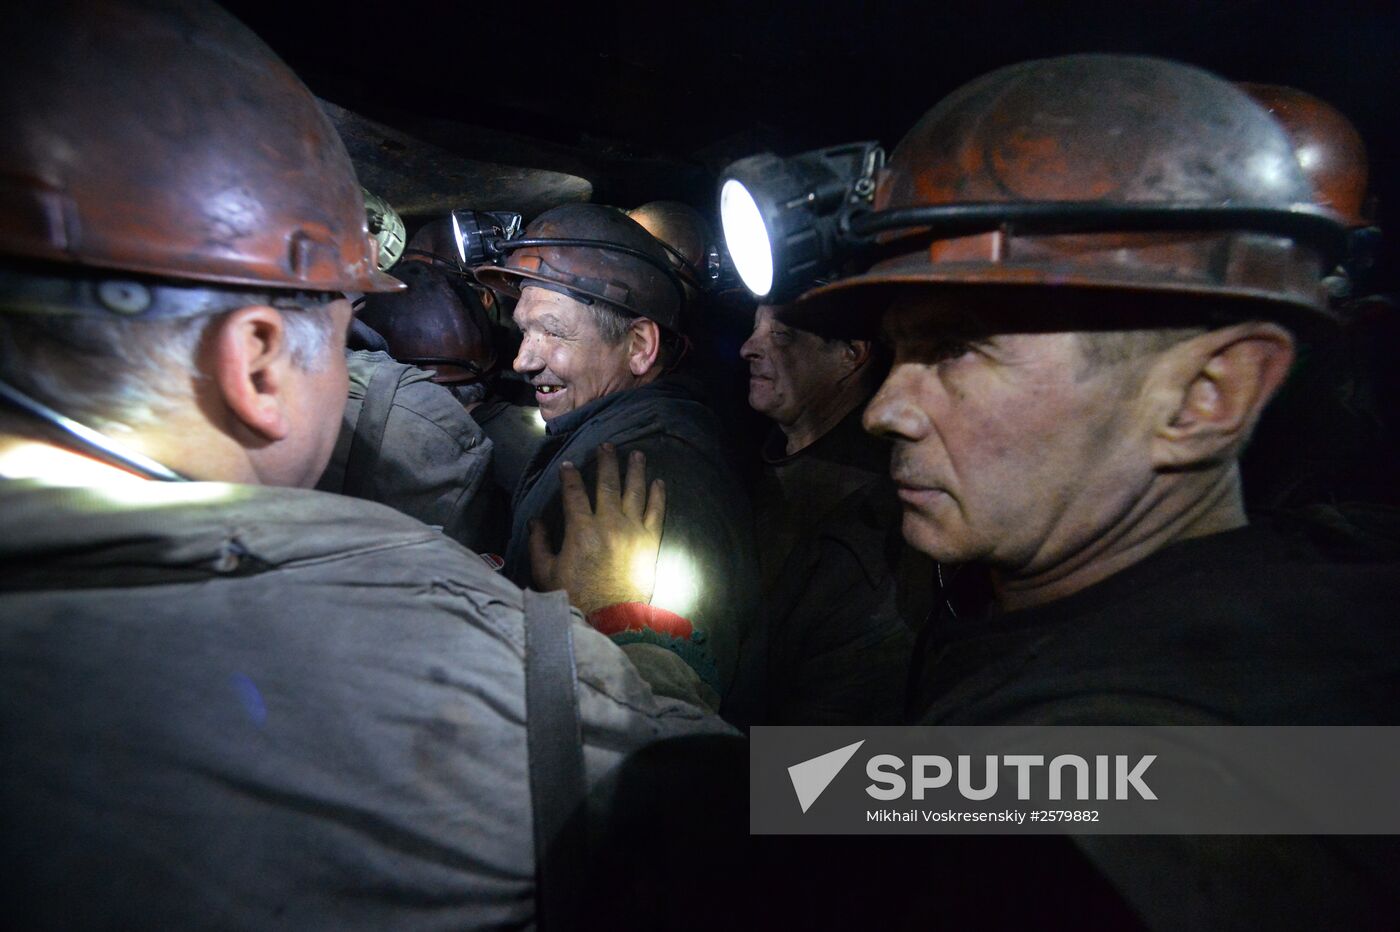 Tkachuk Mine in Khartsyzsk, Donbas